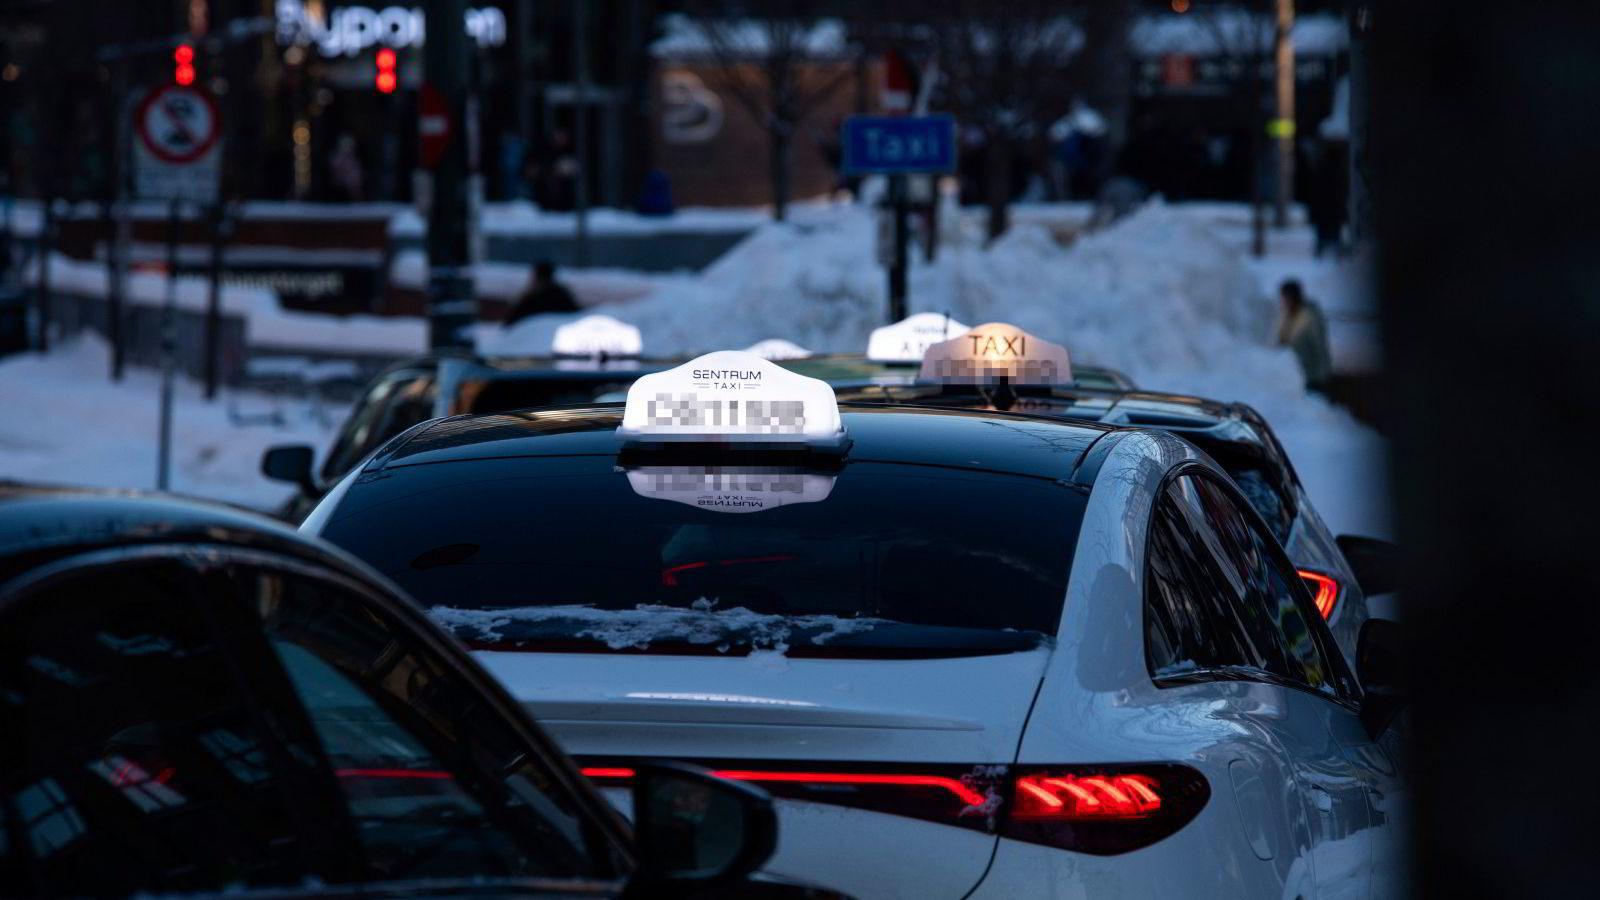 Vy svartelister drosjeselskap etter mistenkelig høye refusjonskrav